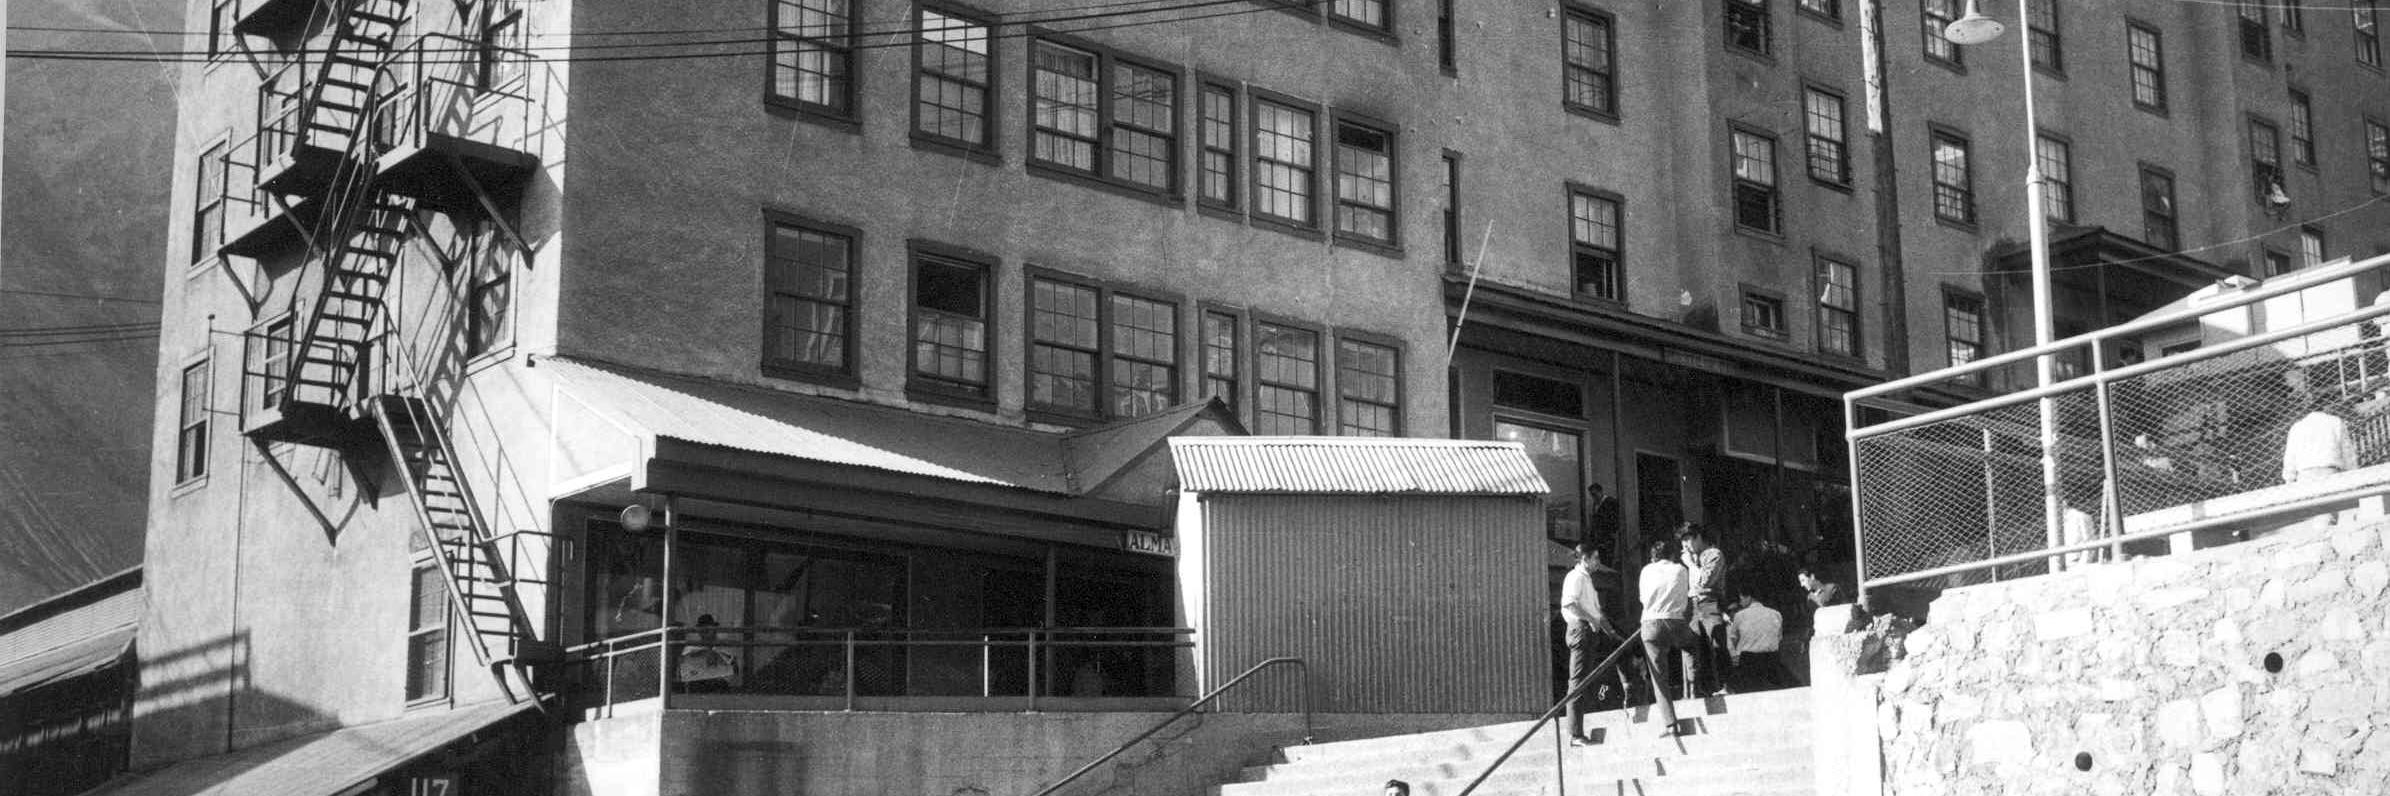 Fotografía monocromática en que se observan en primer plano personas usando la escalera central de Sewell, en segundo plano tres edificios denominados camarotes, lugar en que pernoctaban los mineros. 